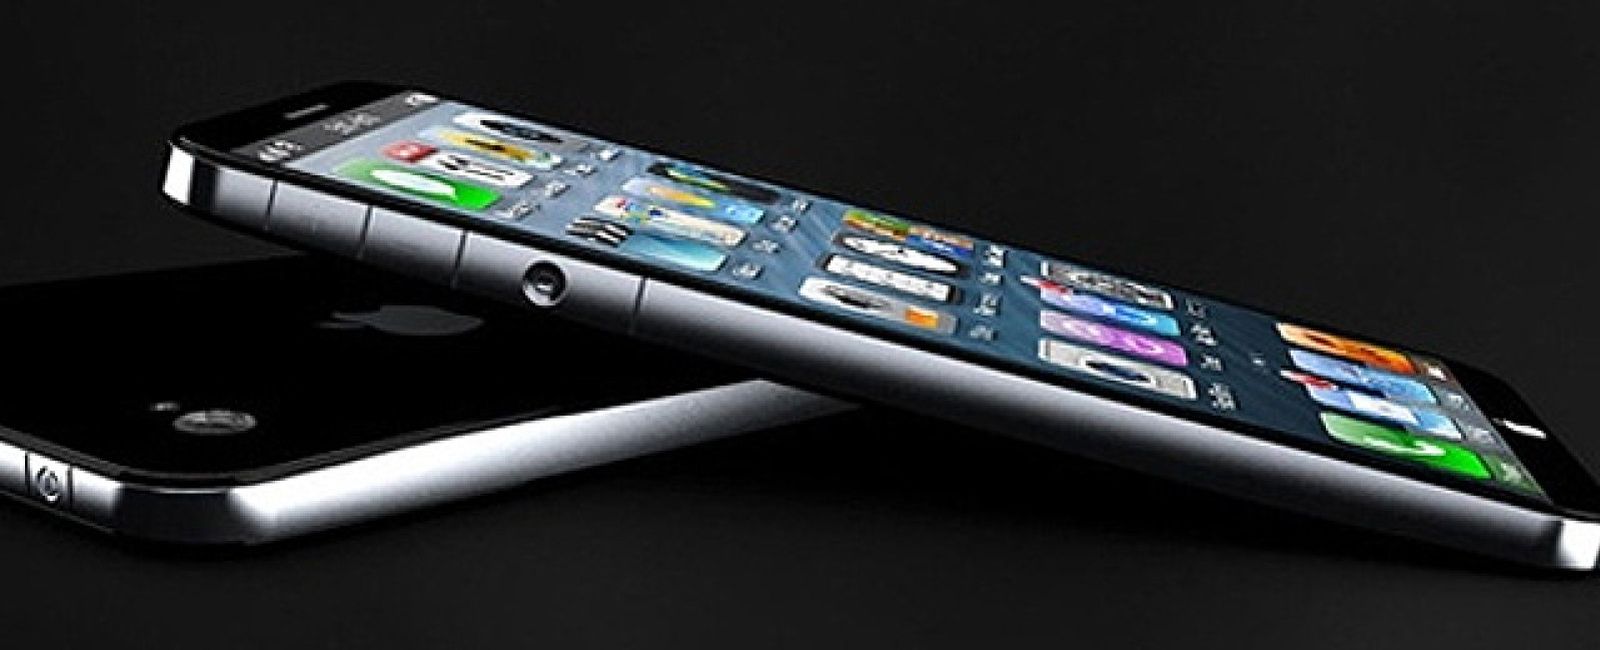 Foto: Los tres pilares de la resurrección de Apple: iWatch, iPhone 5S e iOS 7